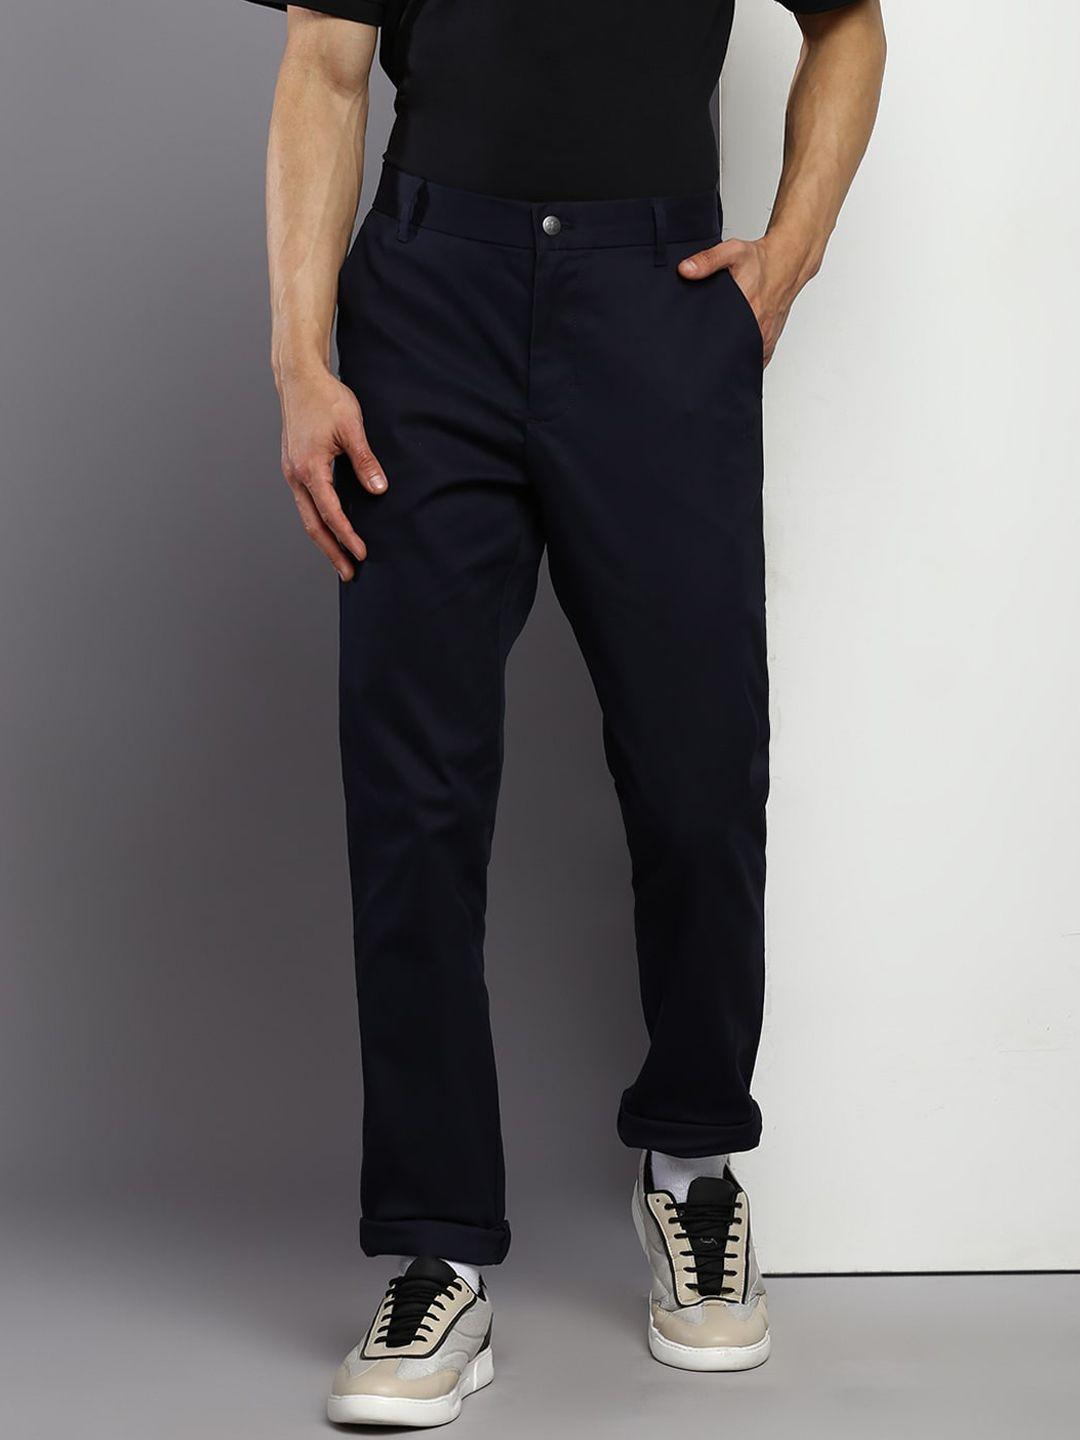 calvin-klein-jeans-men-mid-rise-slim-fit-trousers